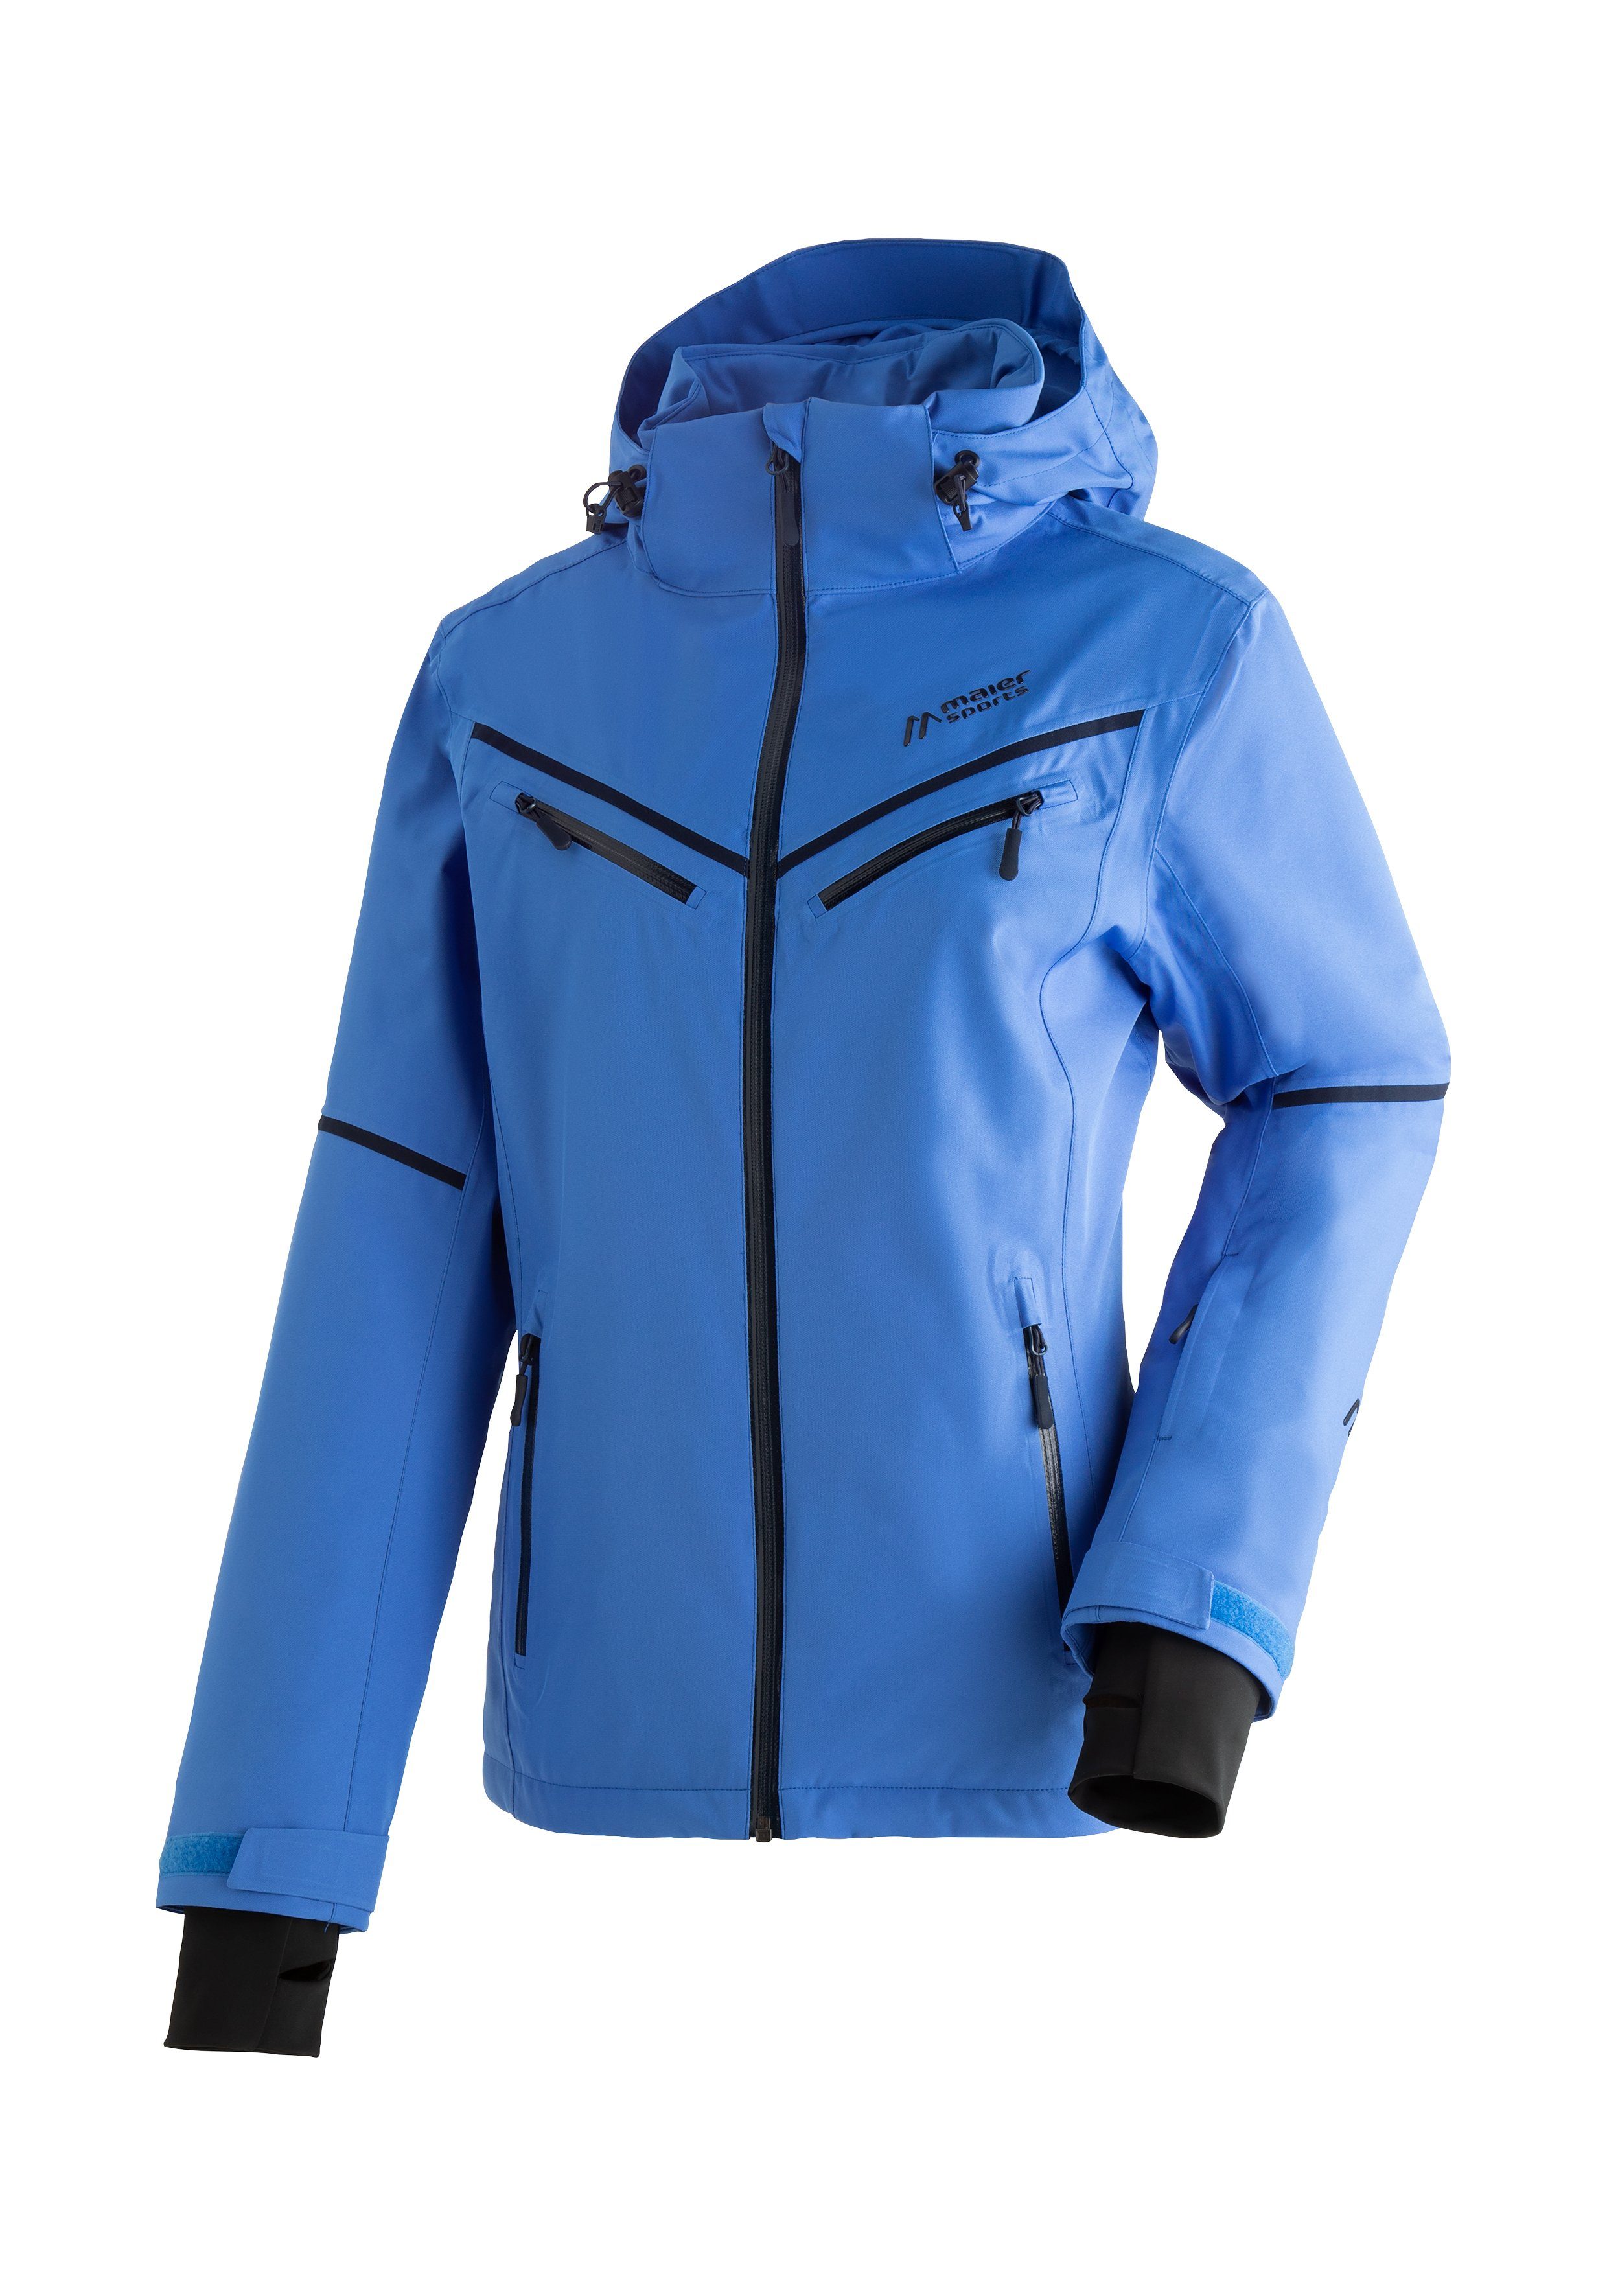 Maier Sports Skijacke Lunada atmungsaktive Damen Ski-Jacke, wasserdichte und winddichte Winterjacke pastellblau